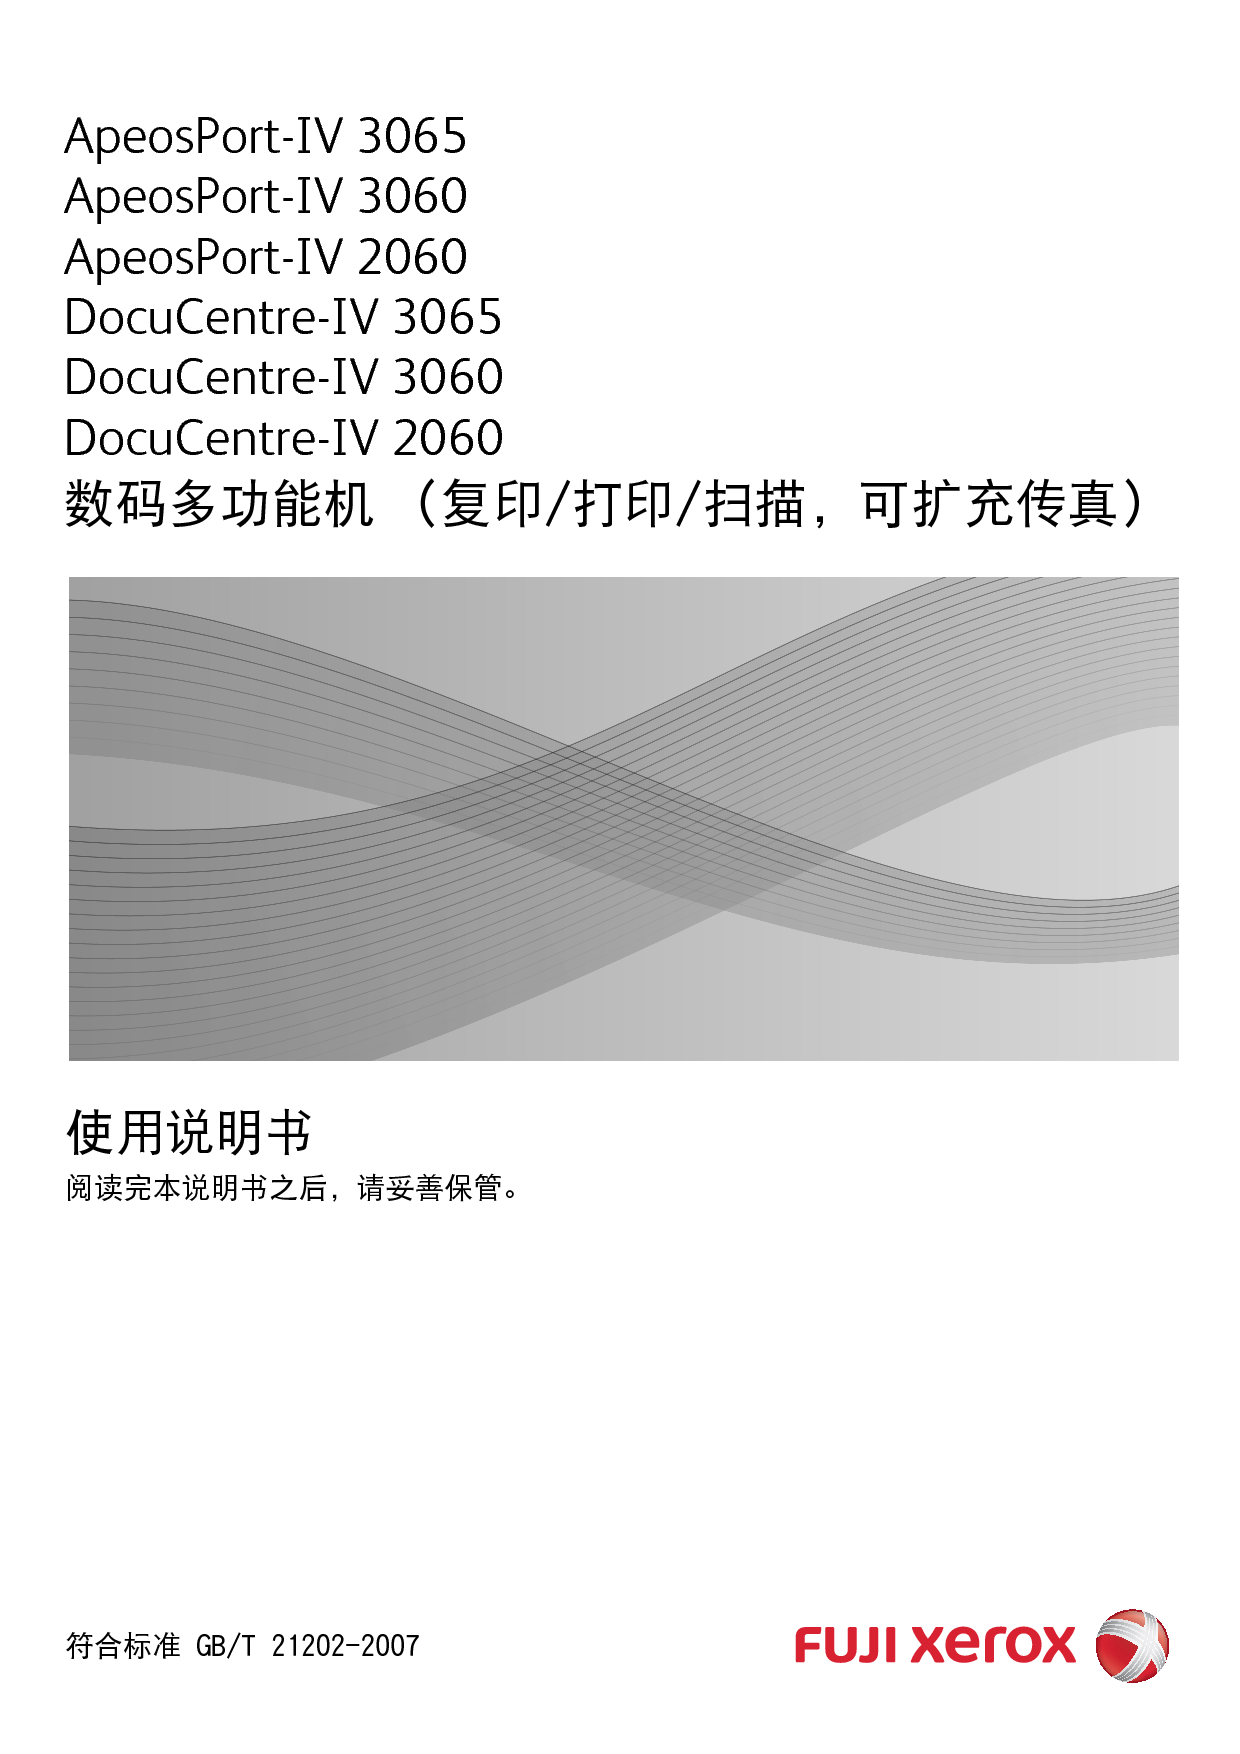 富士施乐 Fuji Xerox ApeosPort-IV 2060, DocuCentre-IV 2060 使用说明书 封面